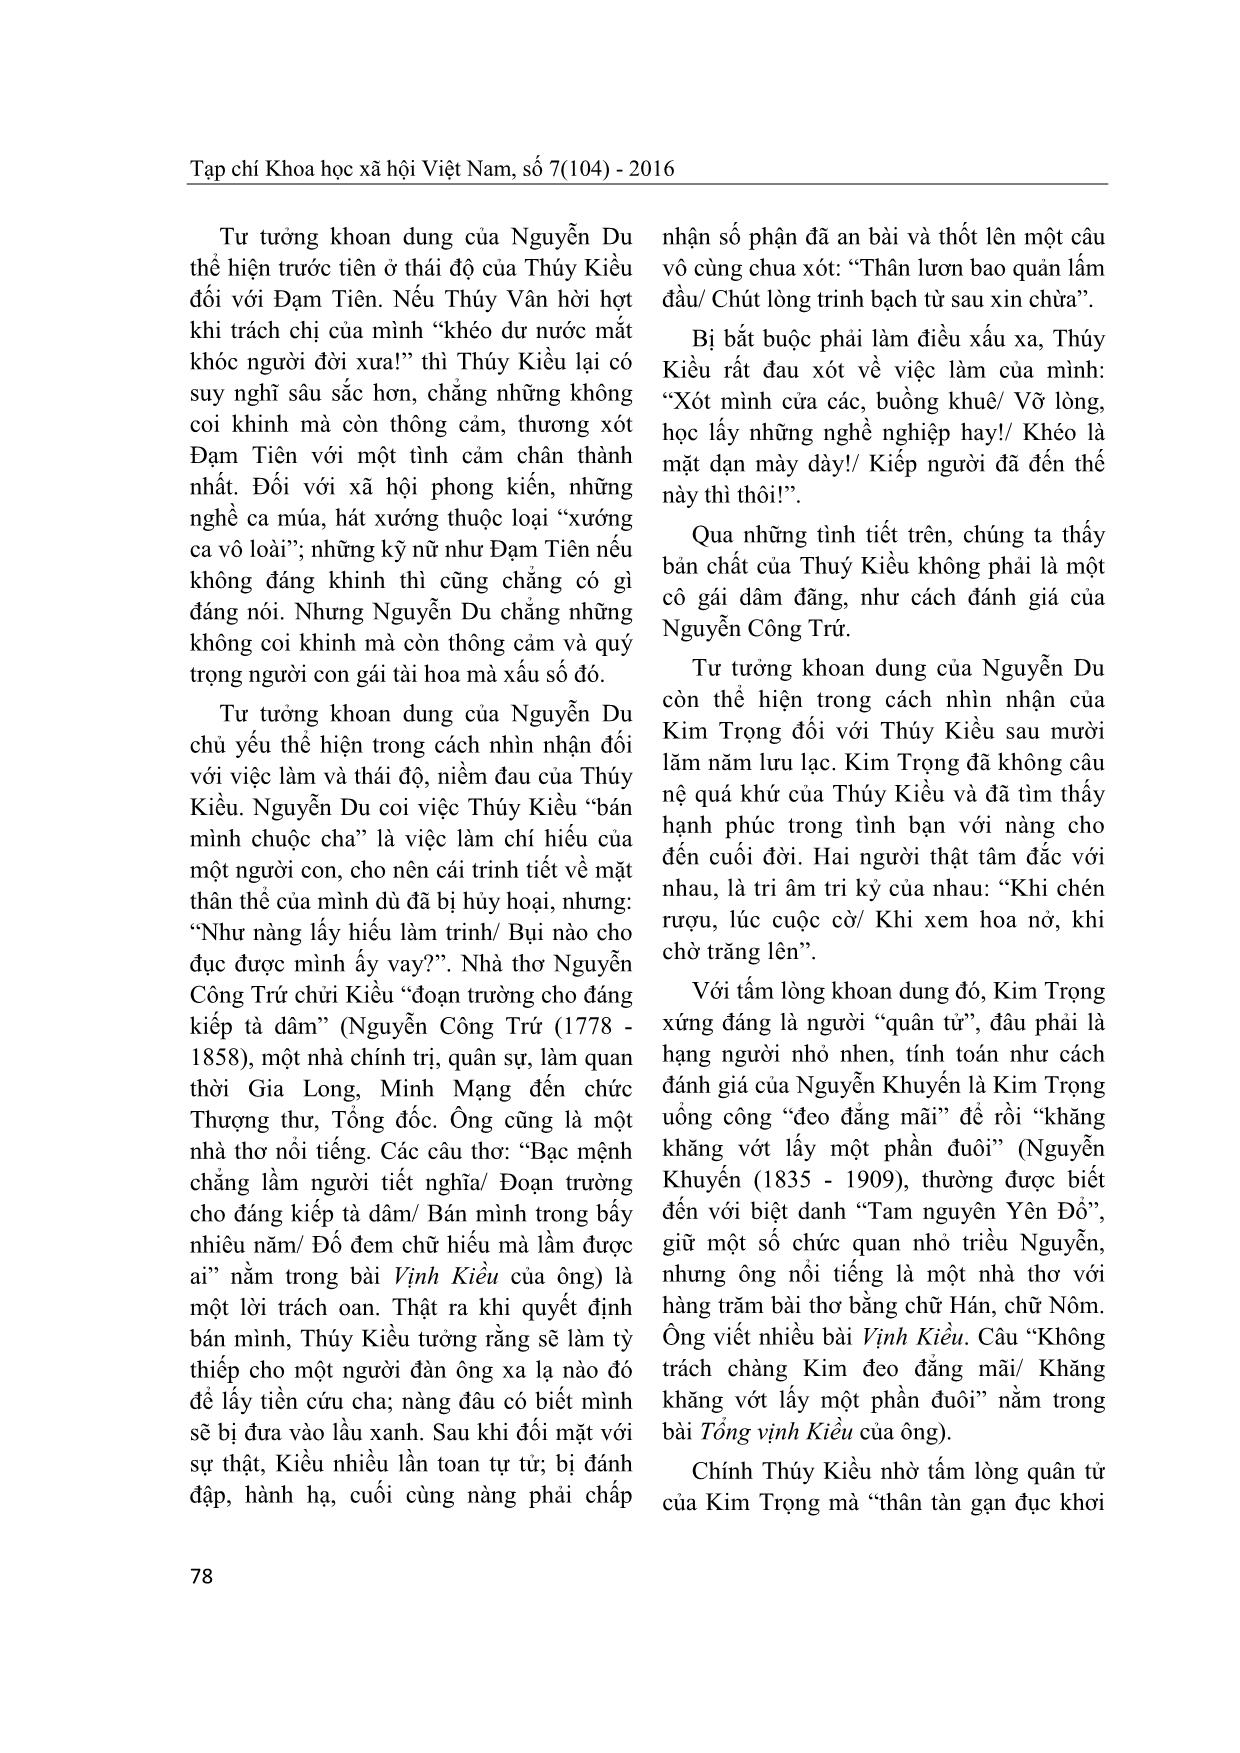 Tư tưởng khoan dung và lạc quan của Nguyễn Du trong Truyện Kiều trang 3